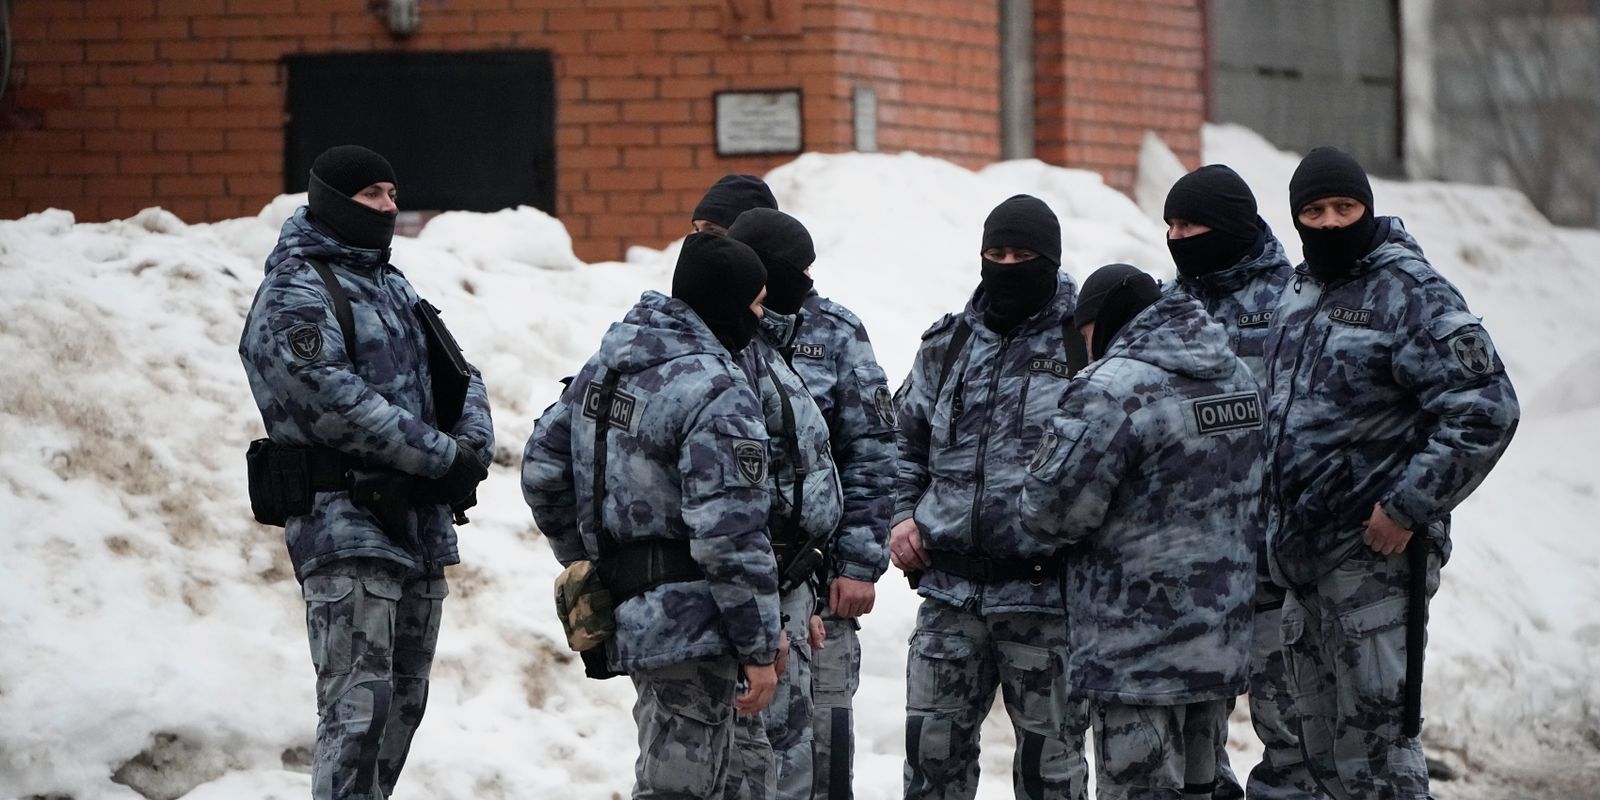 kravallpolis på plats när navalnyj begravs i moskva